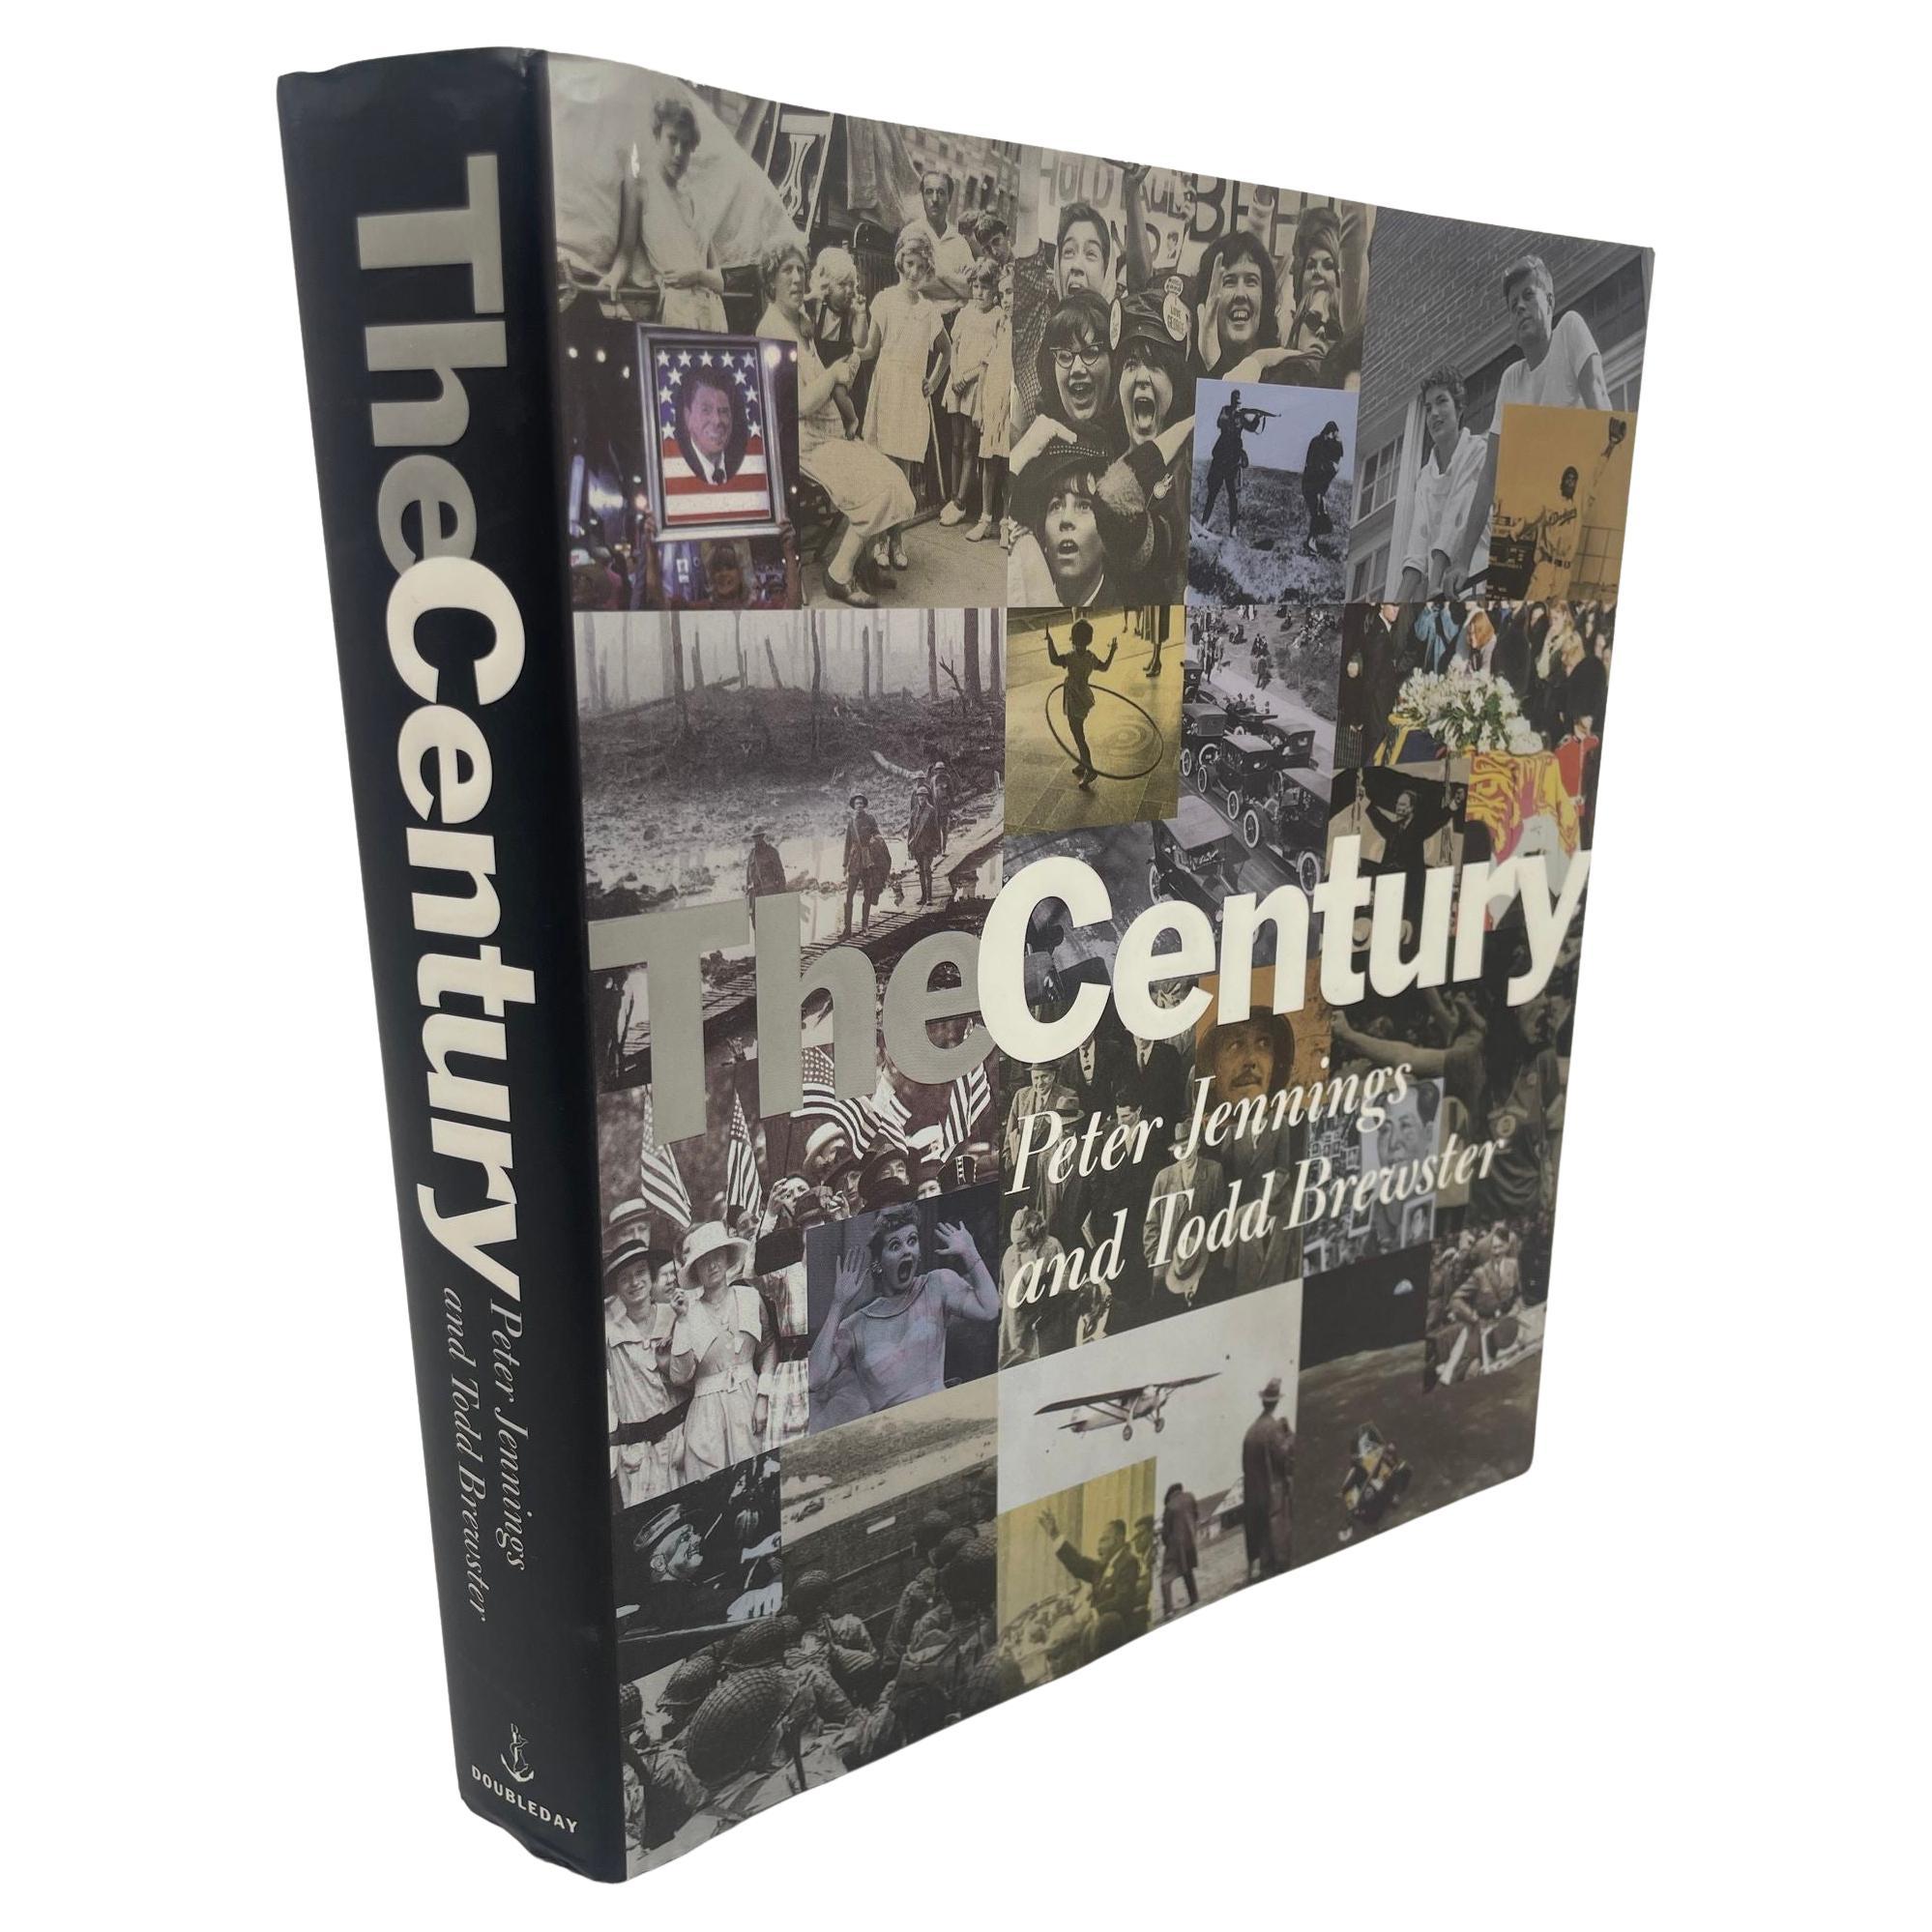 The Century von Peter Jennings und Todd Brewster veröffentlicht von Doubleday 1998